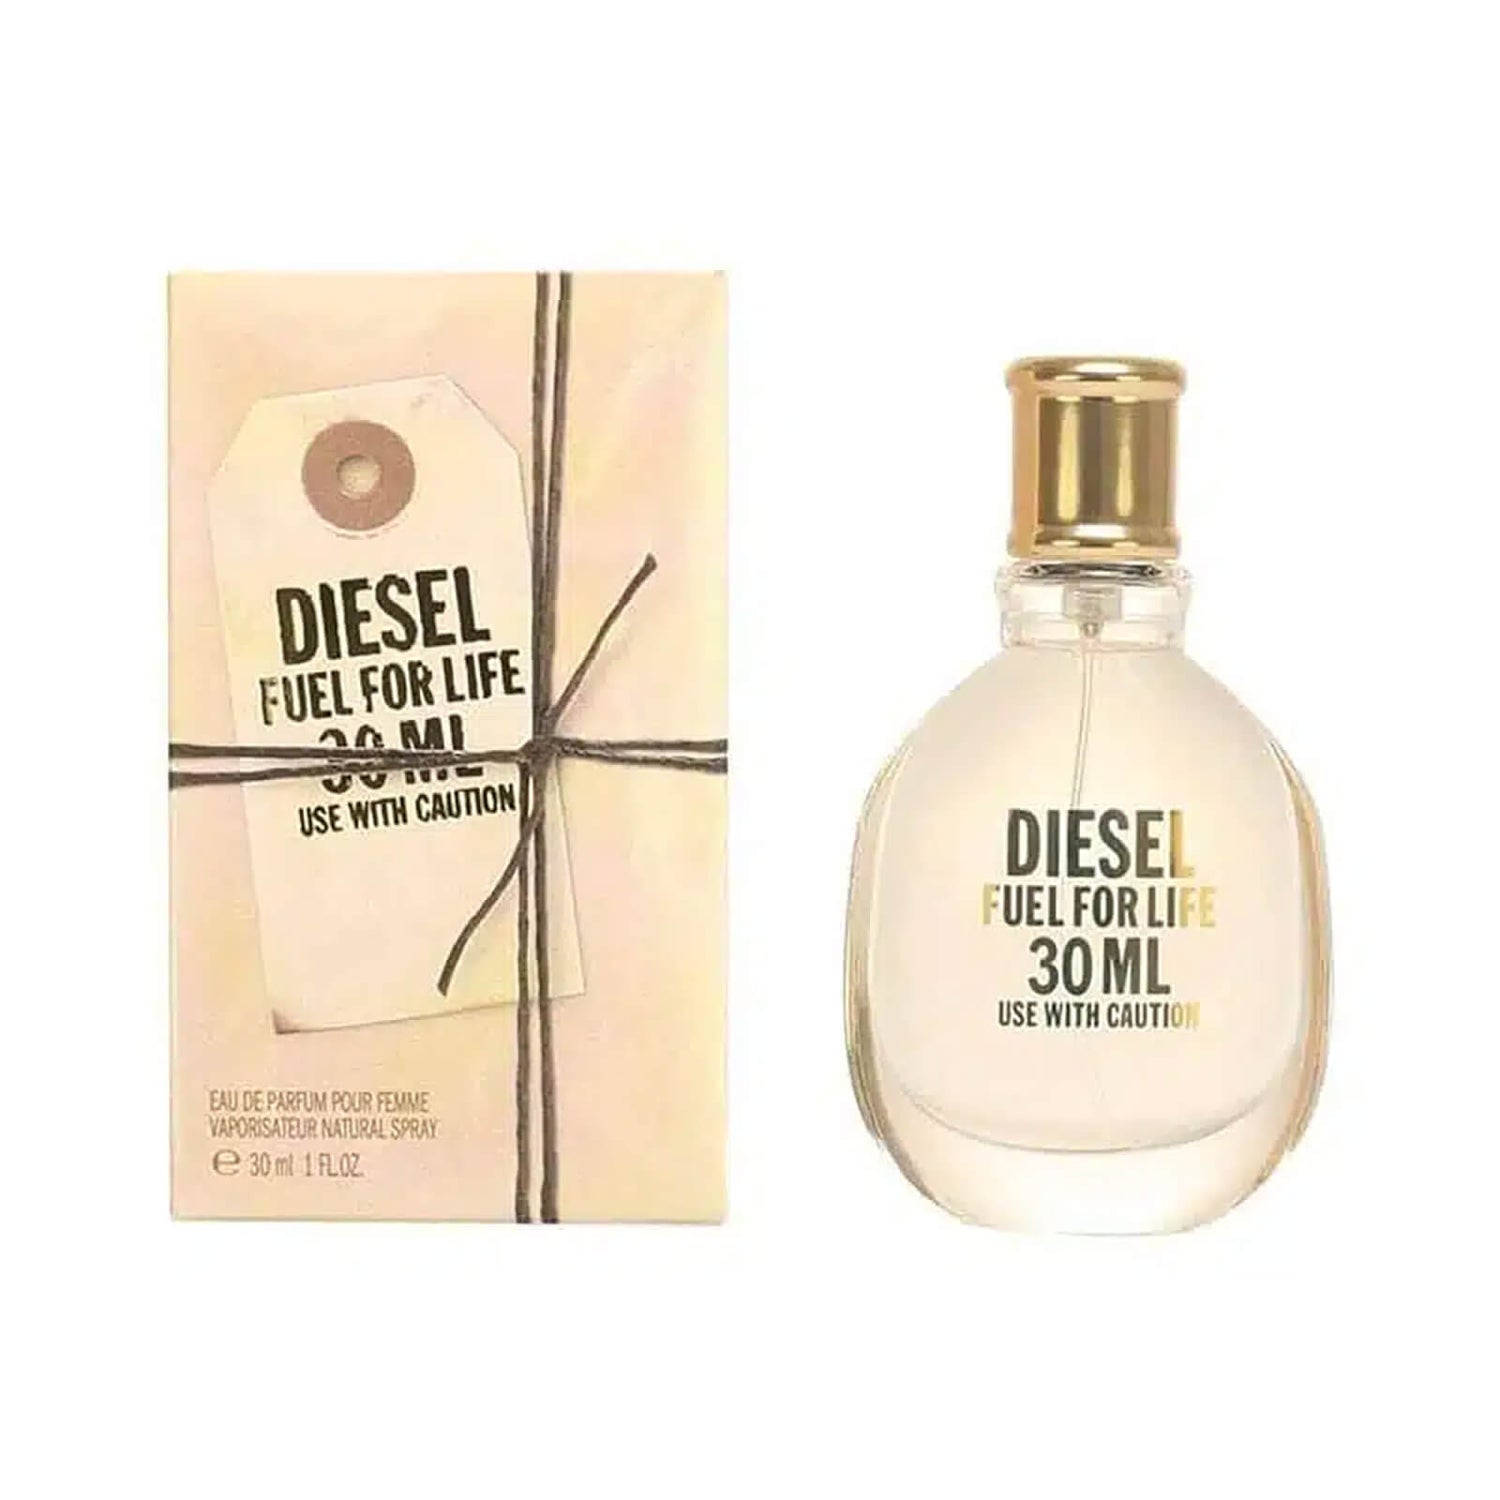 Diesel Fuel for Life Eau de Parfum 30 ml